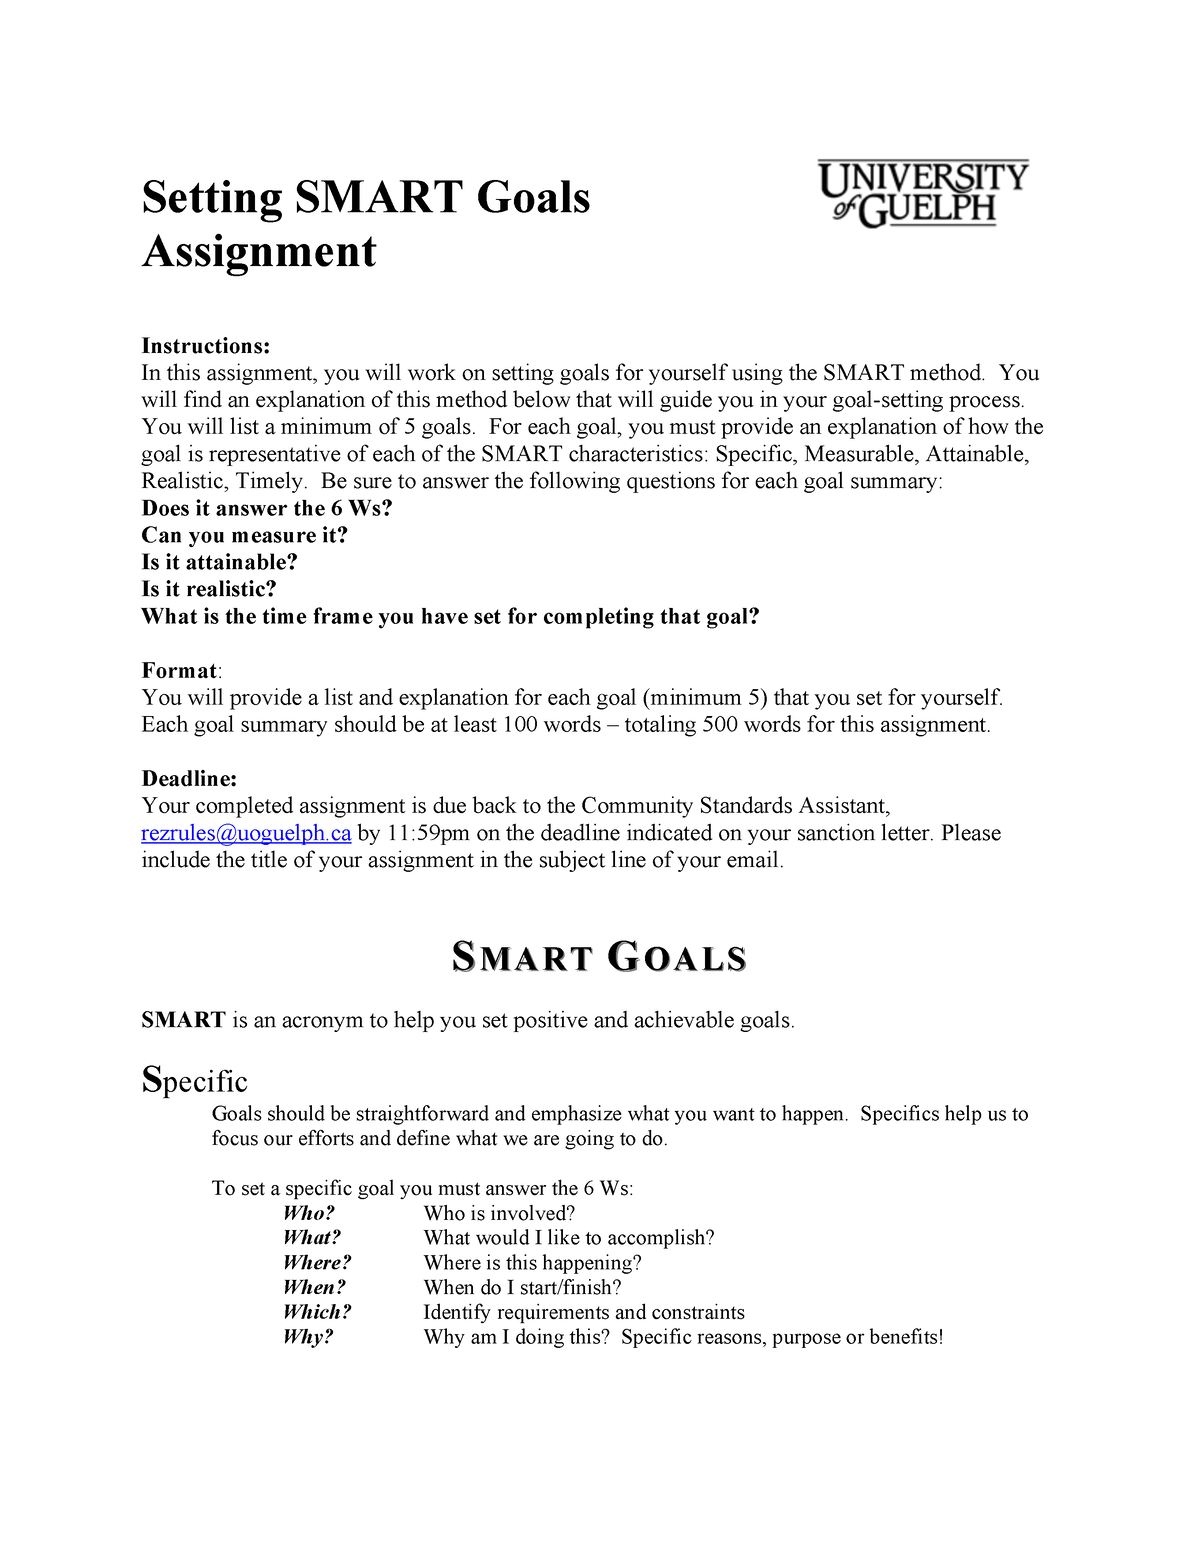 smart goal assignment mgt538